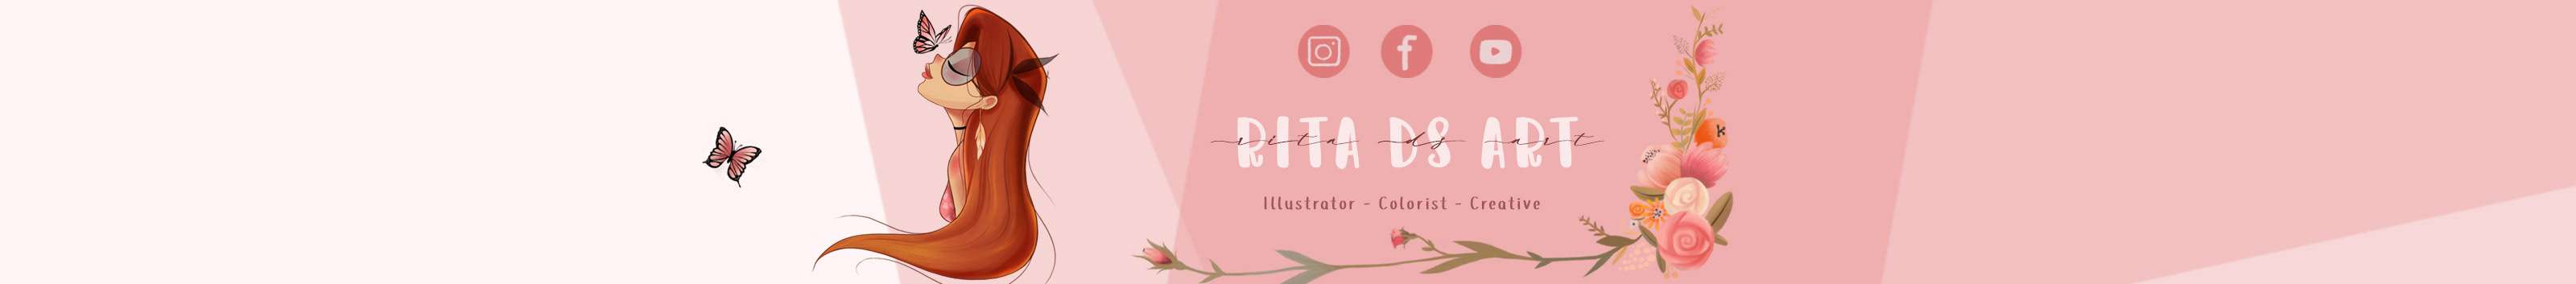 Banner de perfil de Rita Rosa Del Sorbo